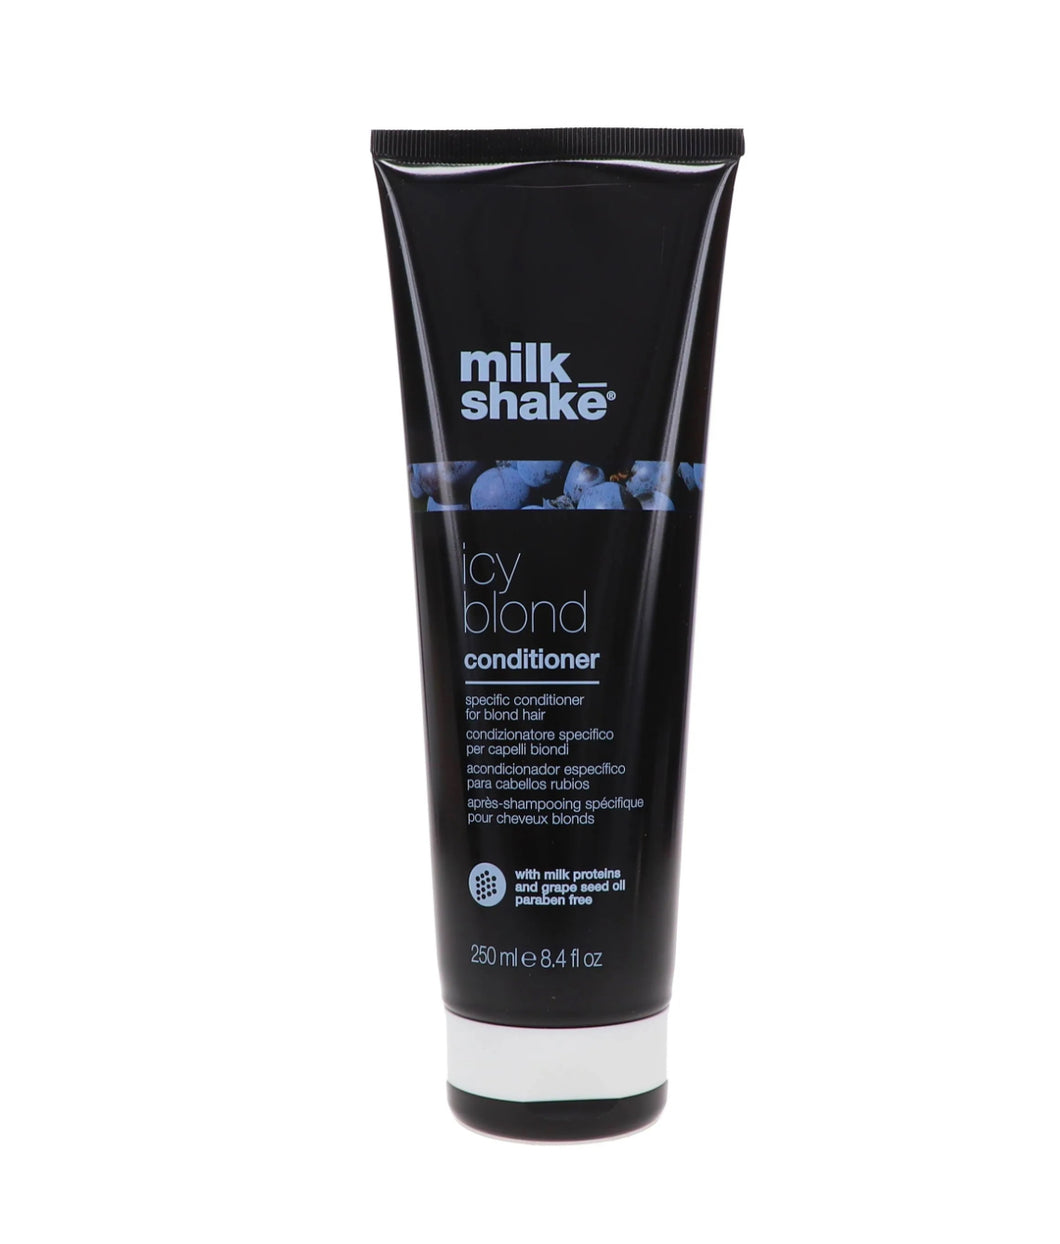 Milk_Shake Icy Blond
Conditioner 250ml